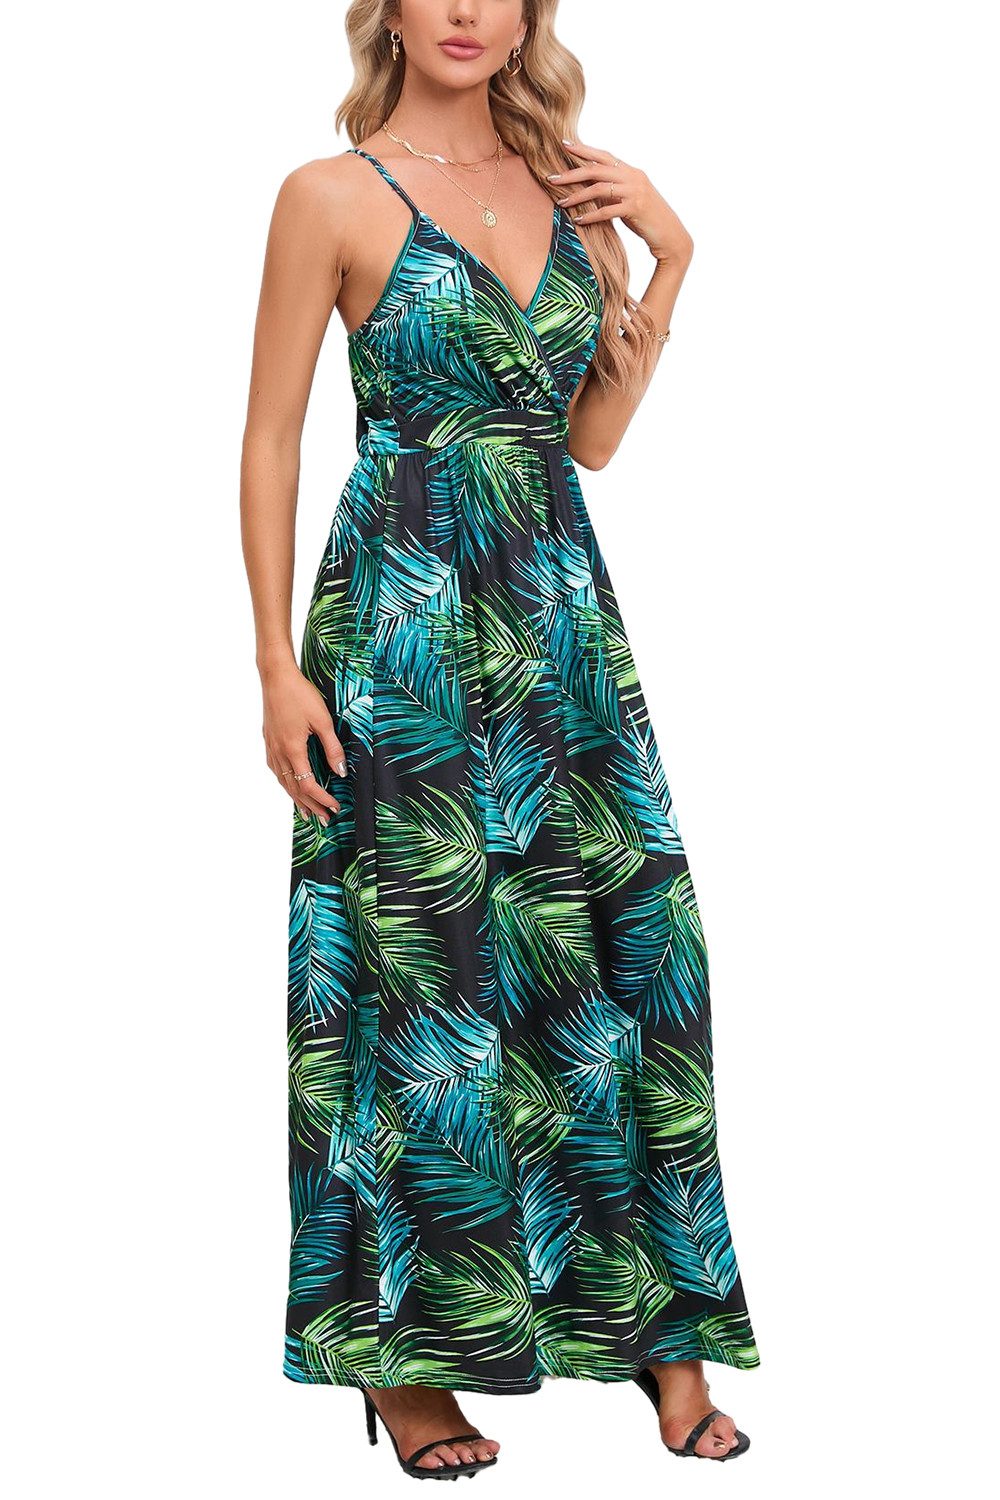 ENIX Strandkleid Ärmelloses Strandkleid mit modischem Blumendruck für Damen Sommerliches, lässiges Trägerkleid im Bohème-Stil mit V-Ausschnitt